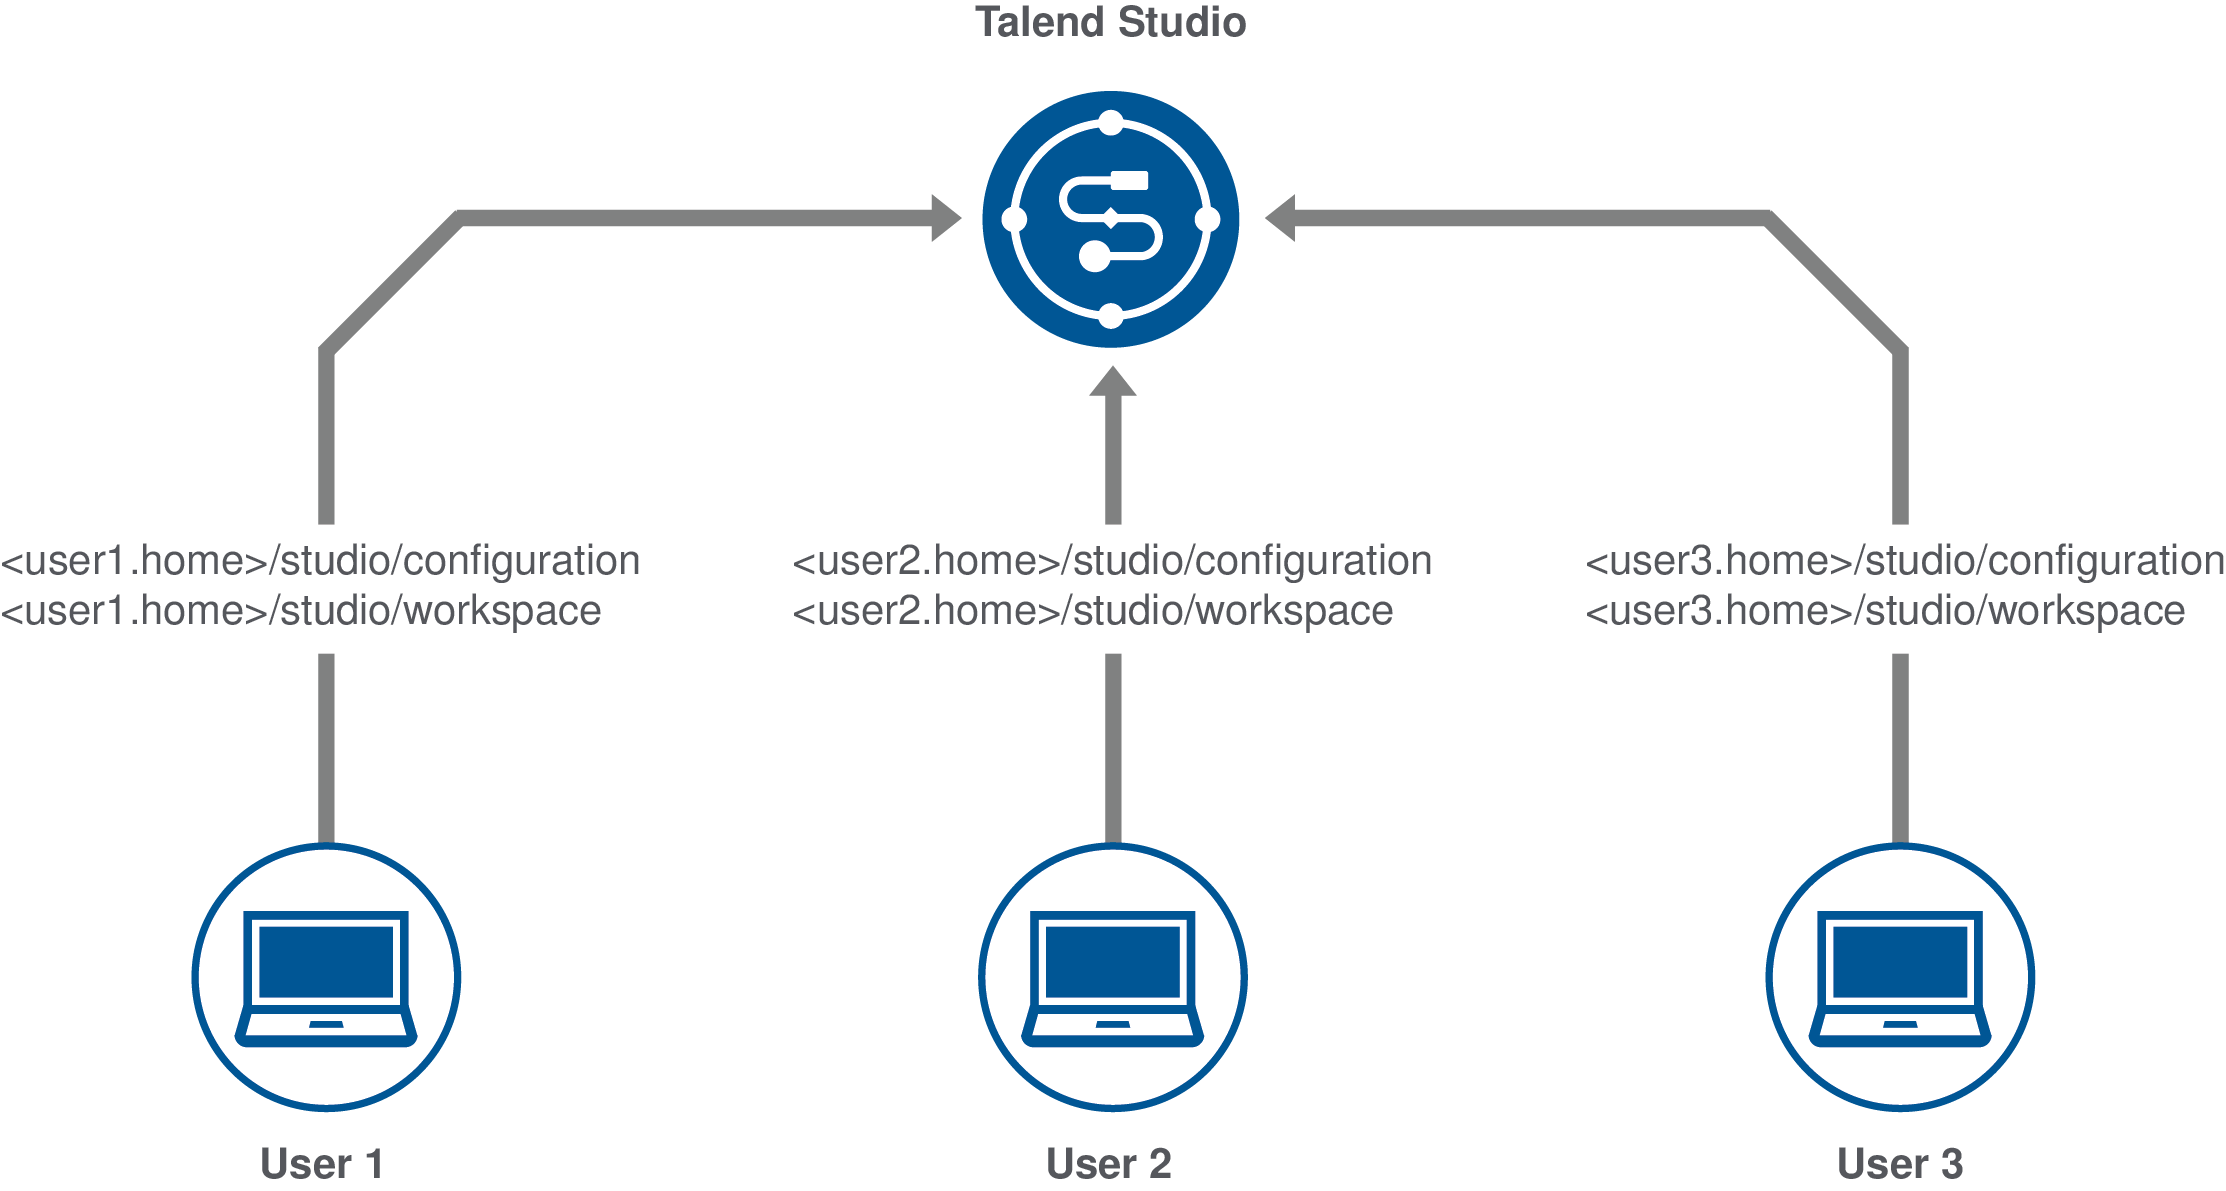 異なる設定とワークスペースでStudio Talendの同じインスタンスにアクセスする、3人の異なるユーザーを示す図。